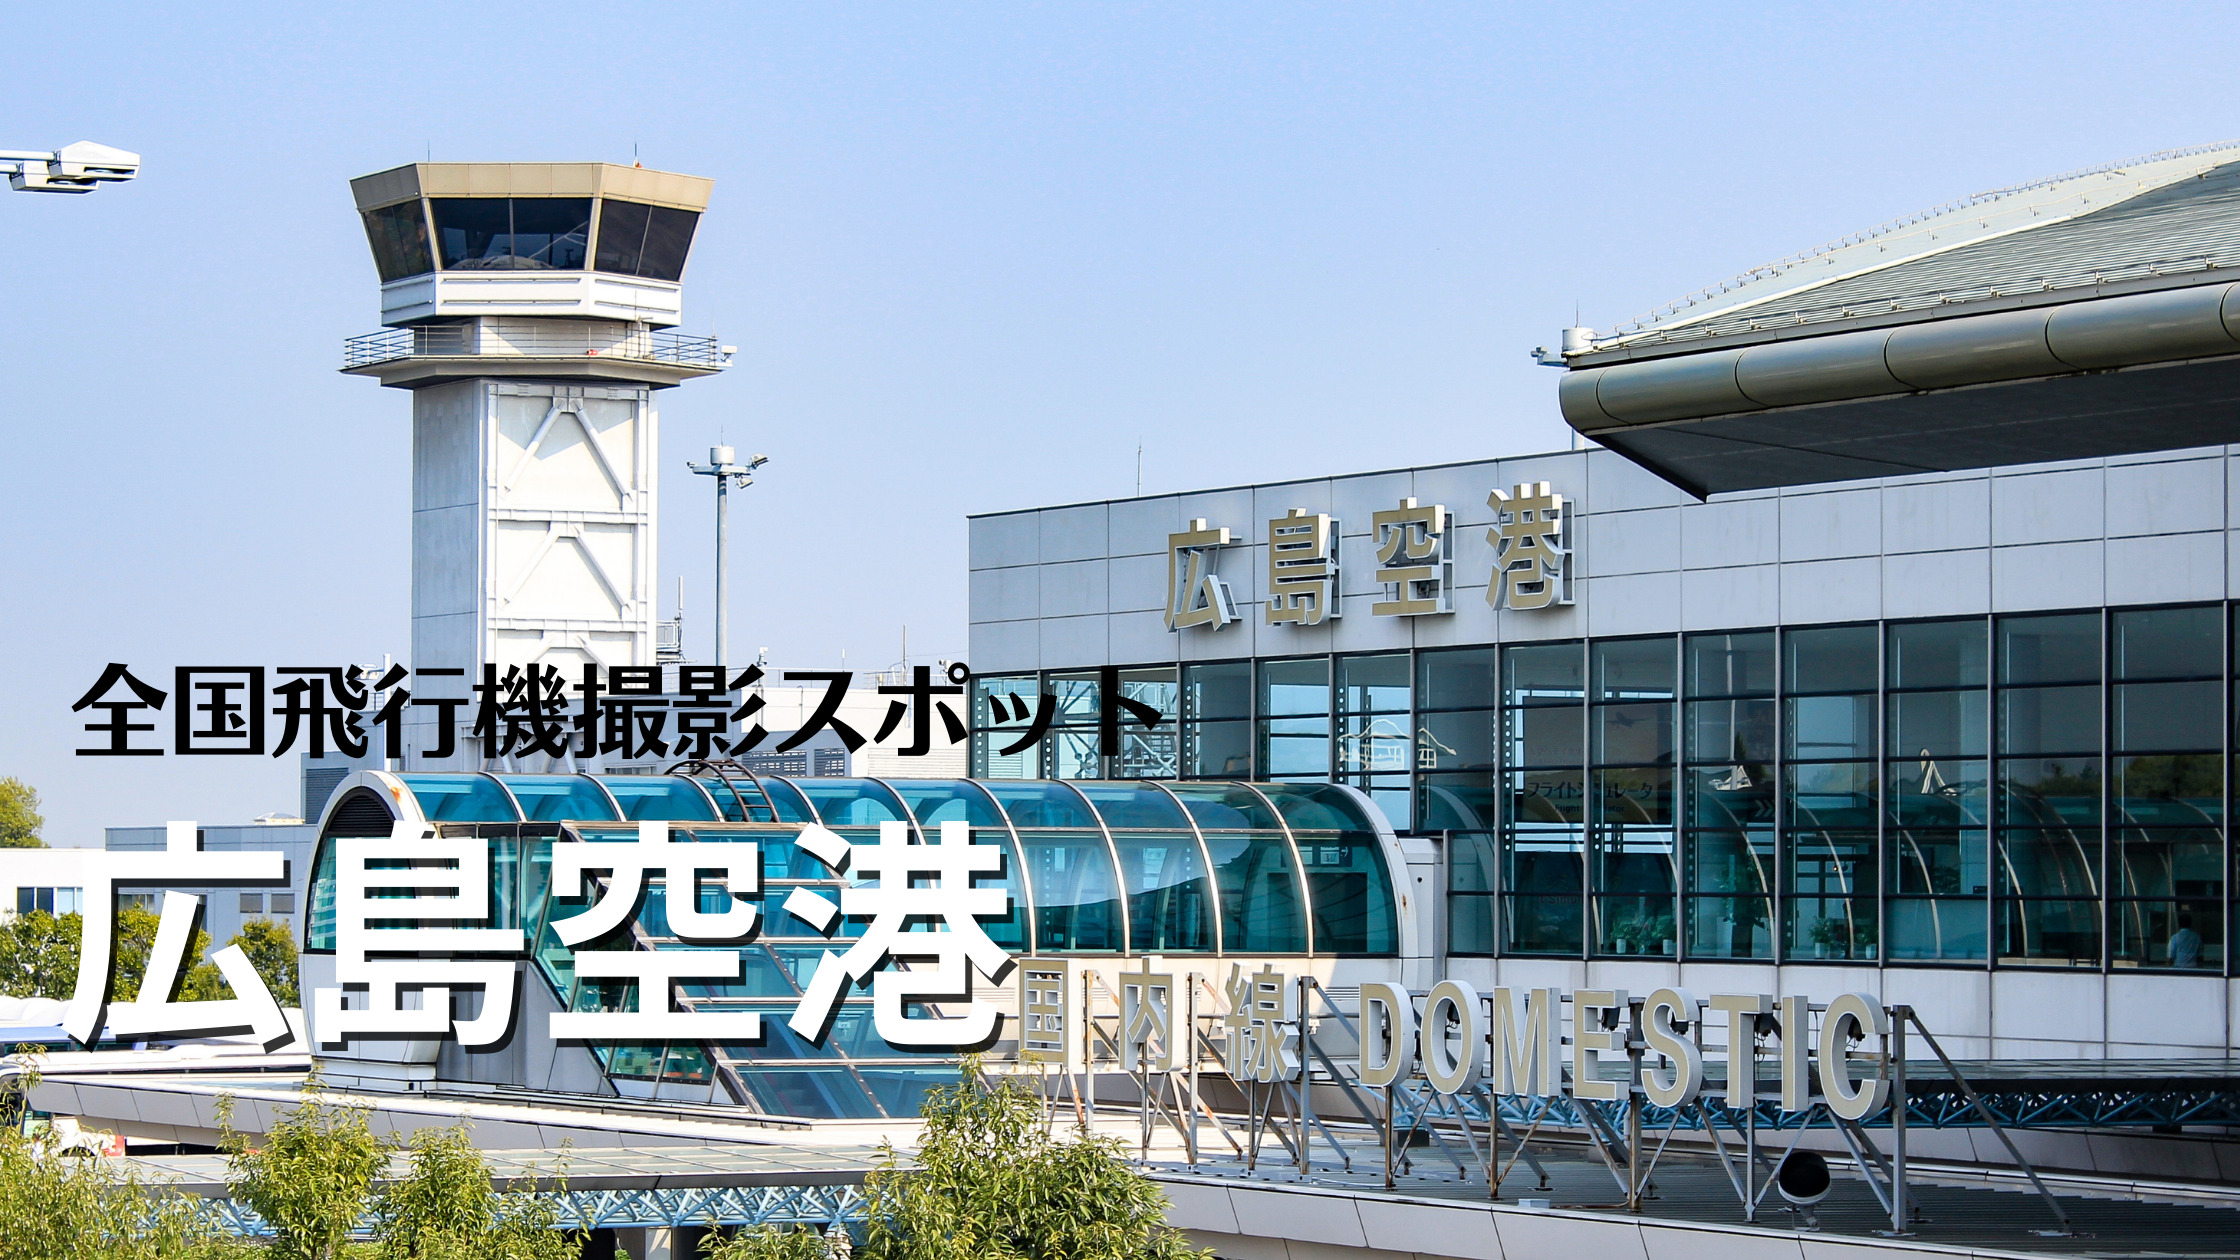 中国 広島空港 Hij Rjoa 飛行機写真撮影スポット シテイリョウコウ